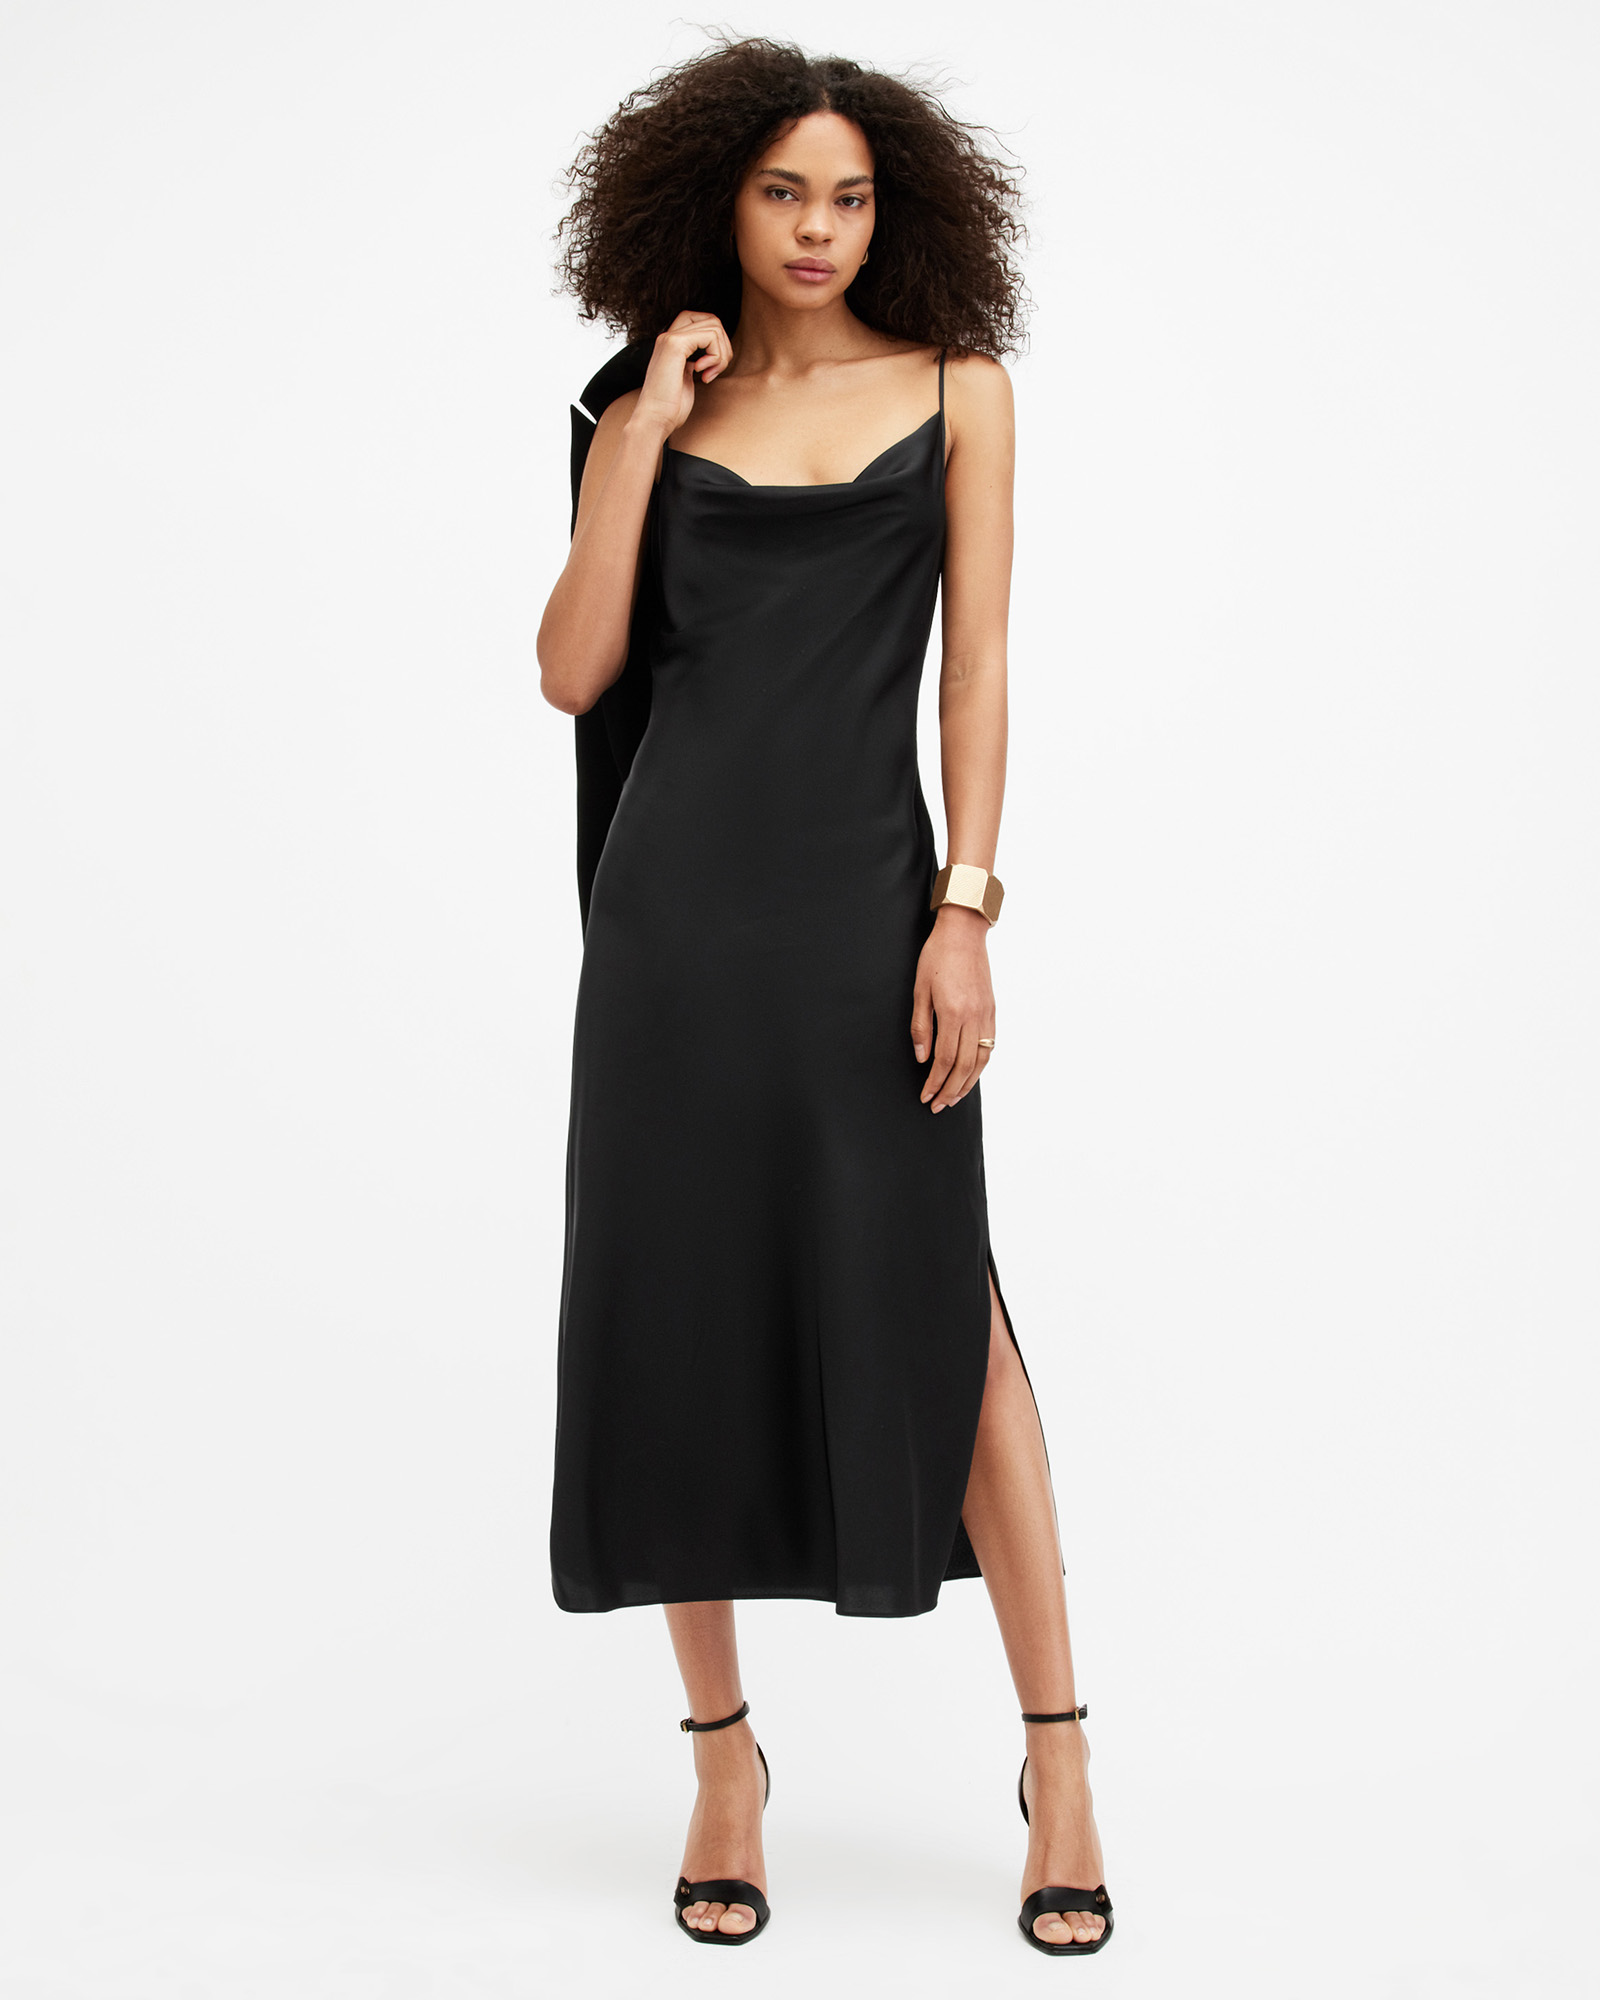 All Saints Sheer Black Under Garment Slip Dress Adjustable Straps Size UK  10